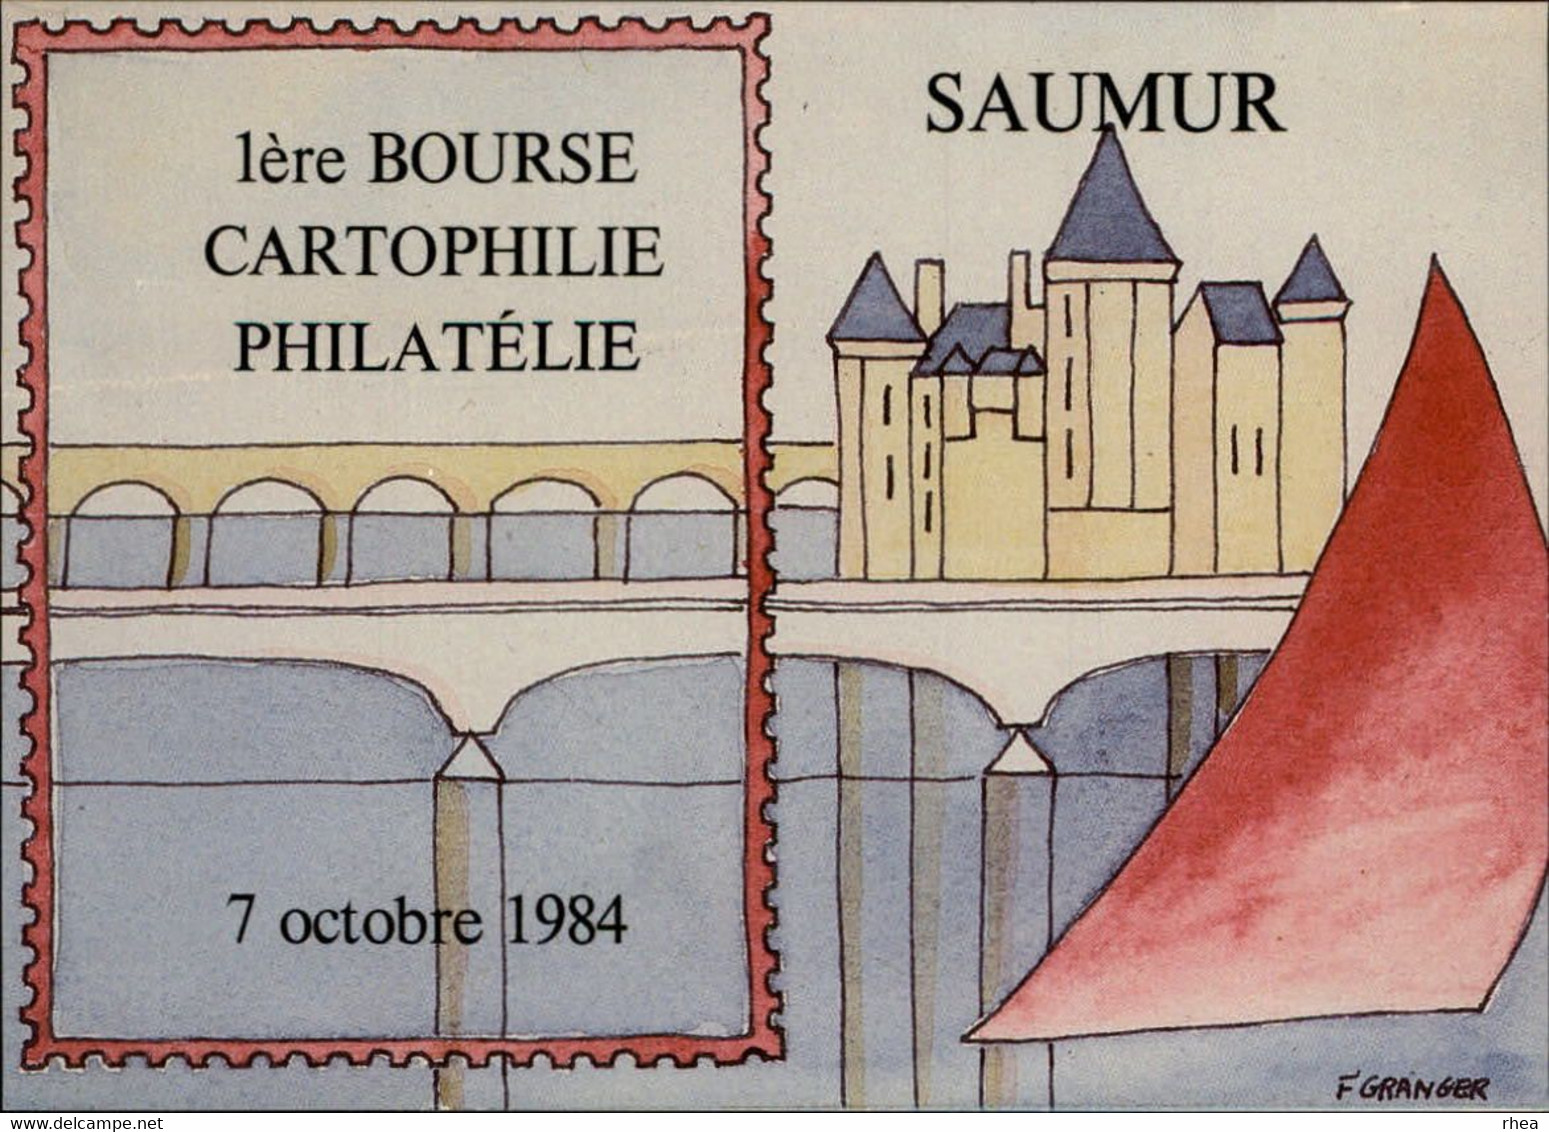 SALONS DE COLLECTIONS - Salon De Cartes Postales -  SAUMUR - 1984 - Dessin De Granger - Bourses & Salons De Collections